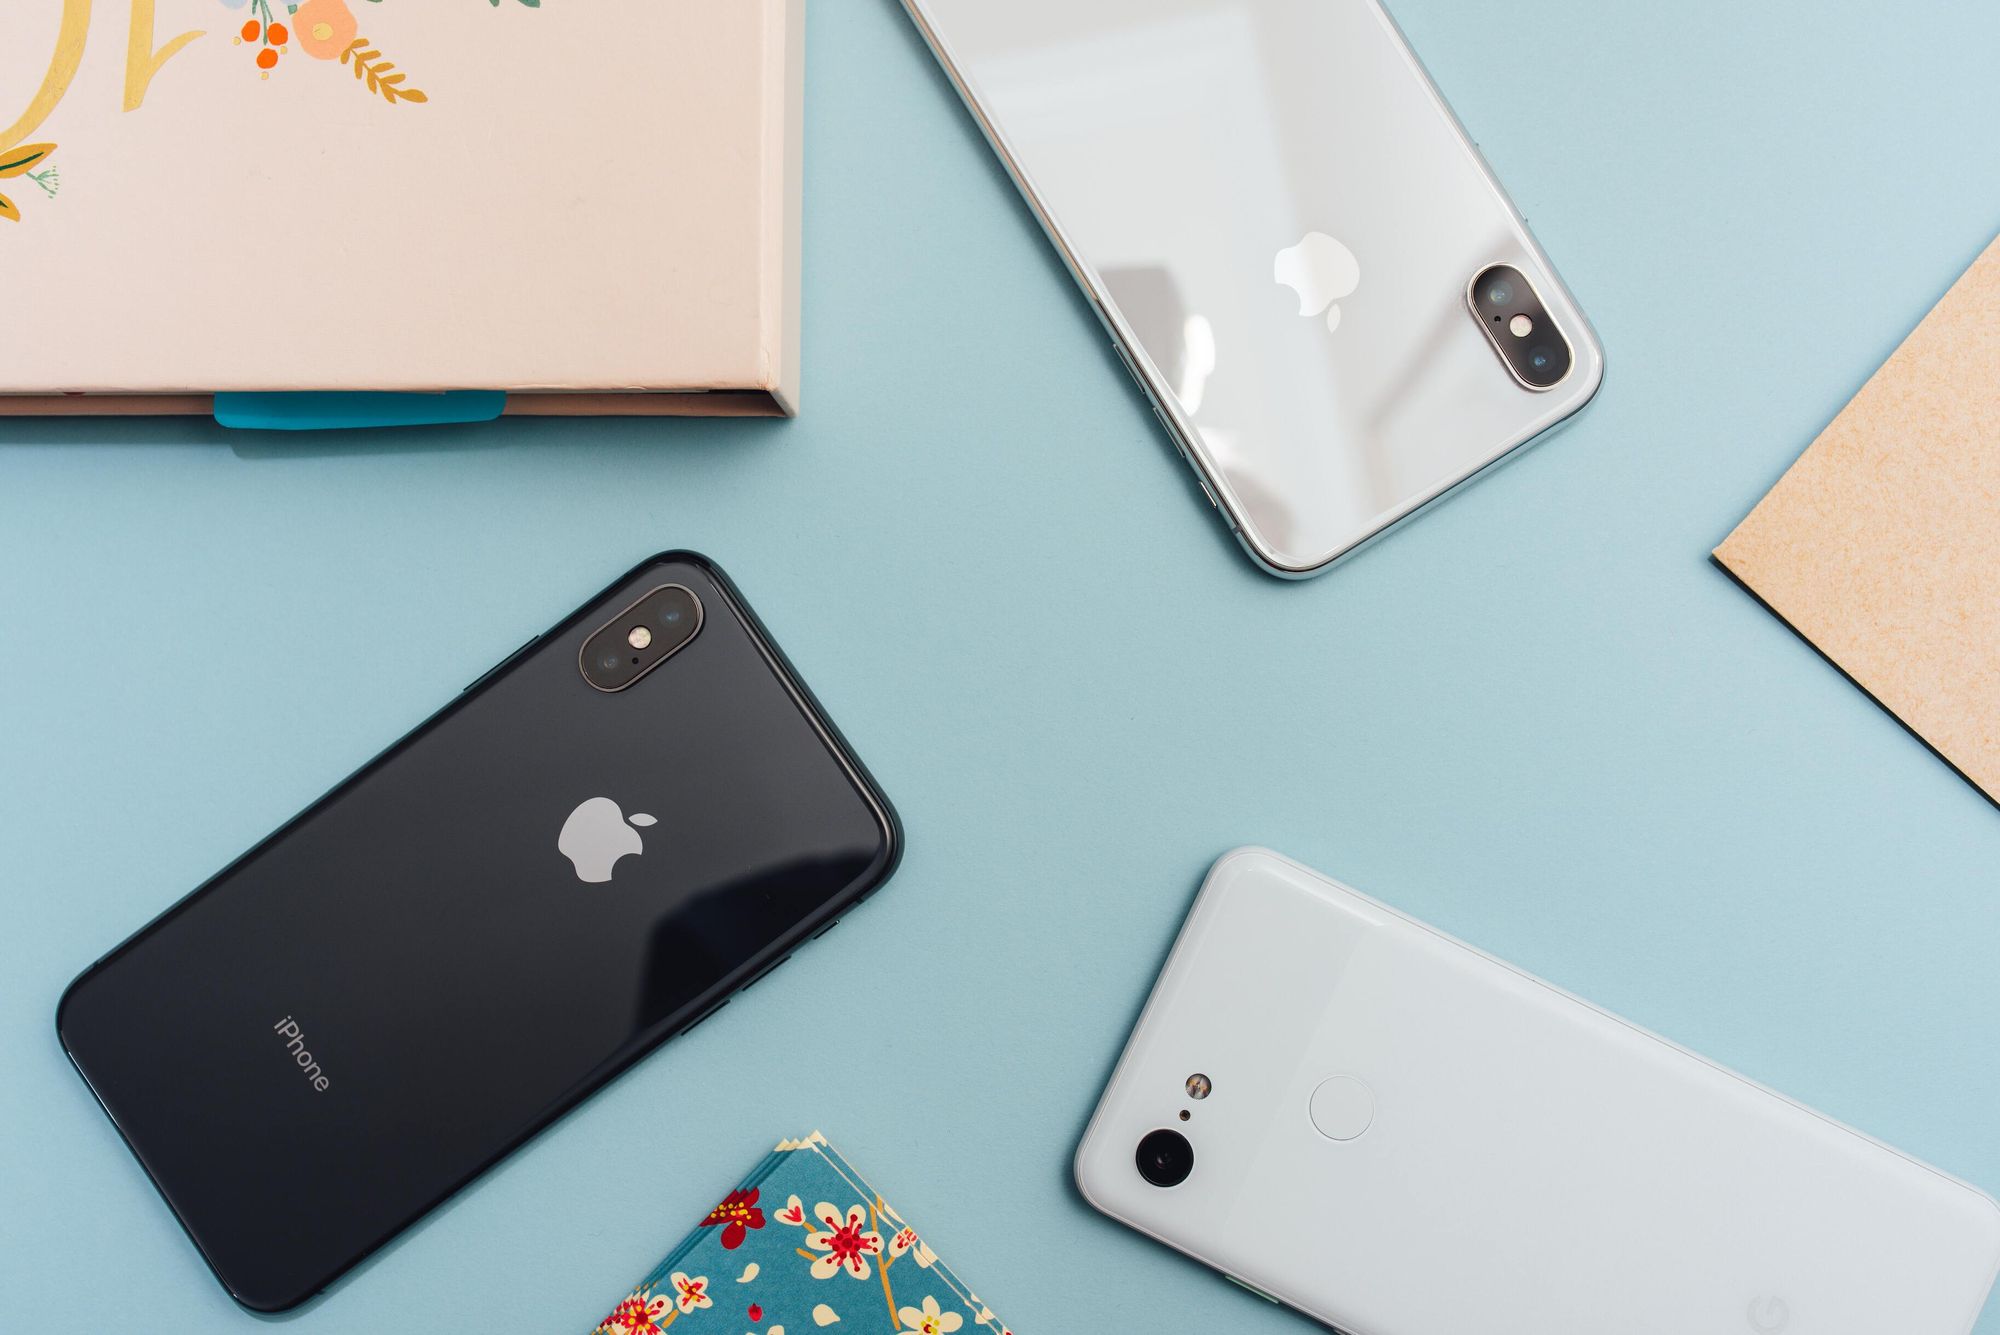 Apple понизила стоимость Android-смартфонов, которые клиенты могли обменять на iPhone с доплатой